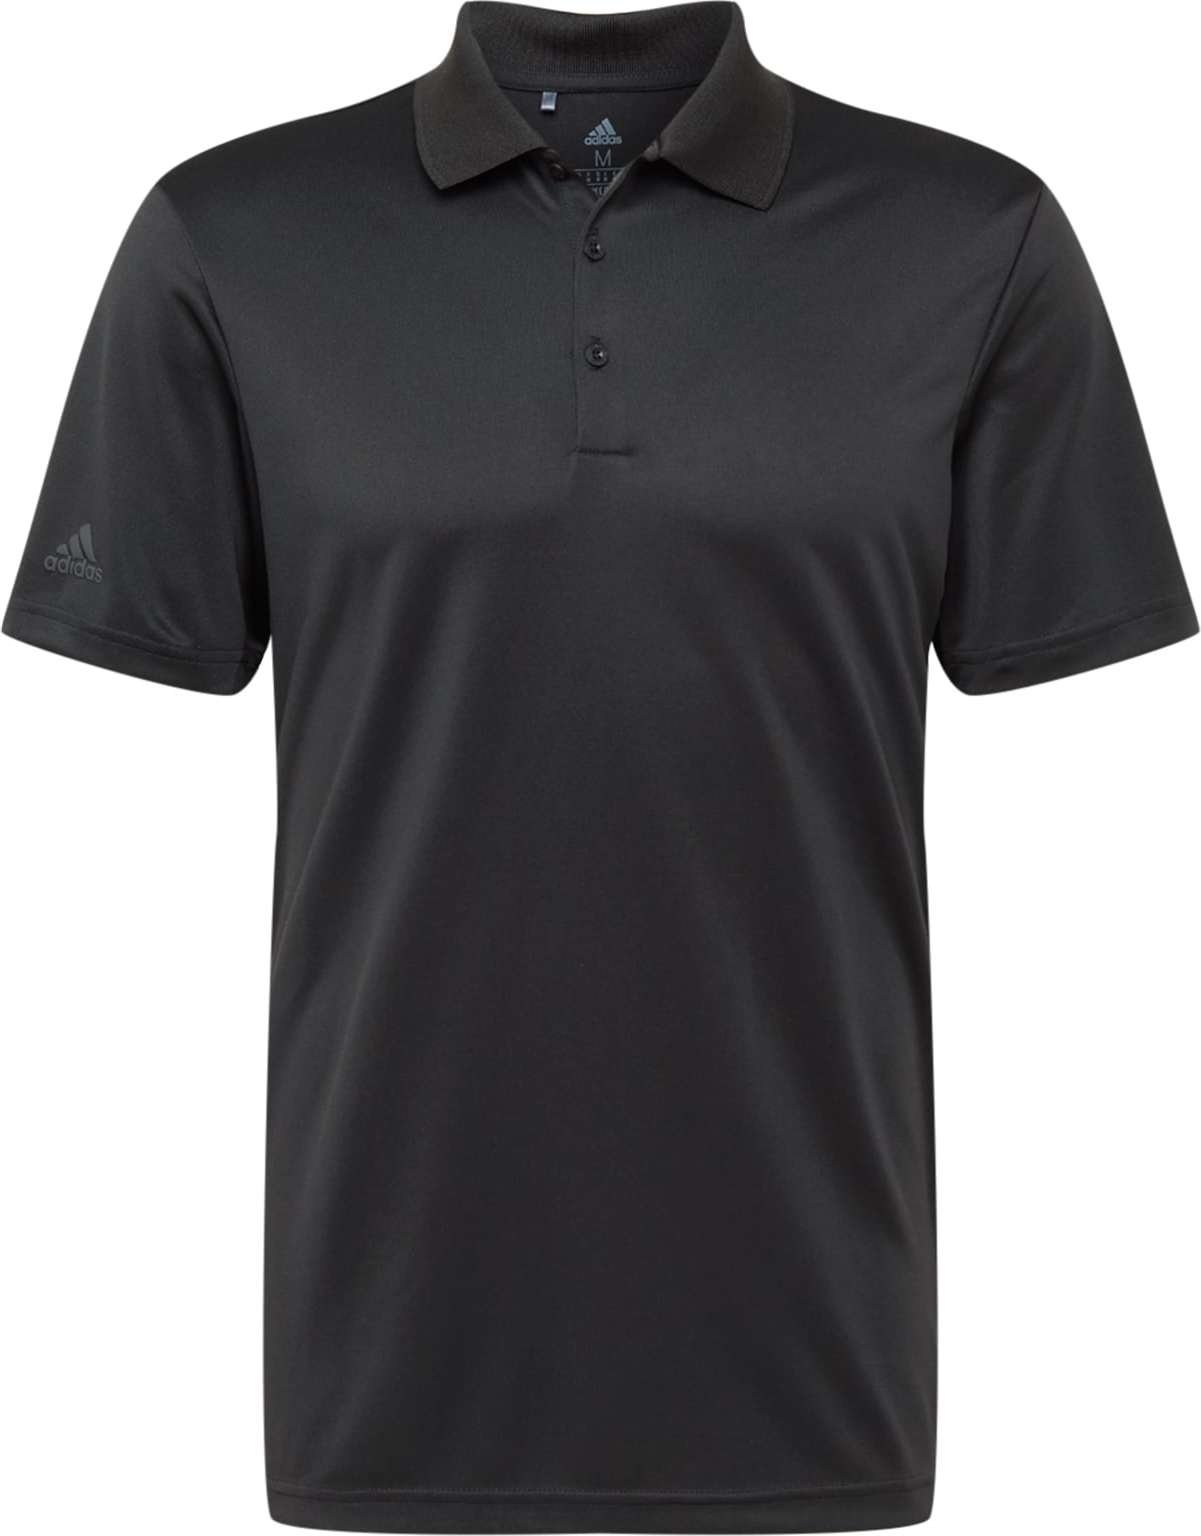 Funkční tričko adidas Golf černá